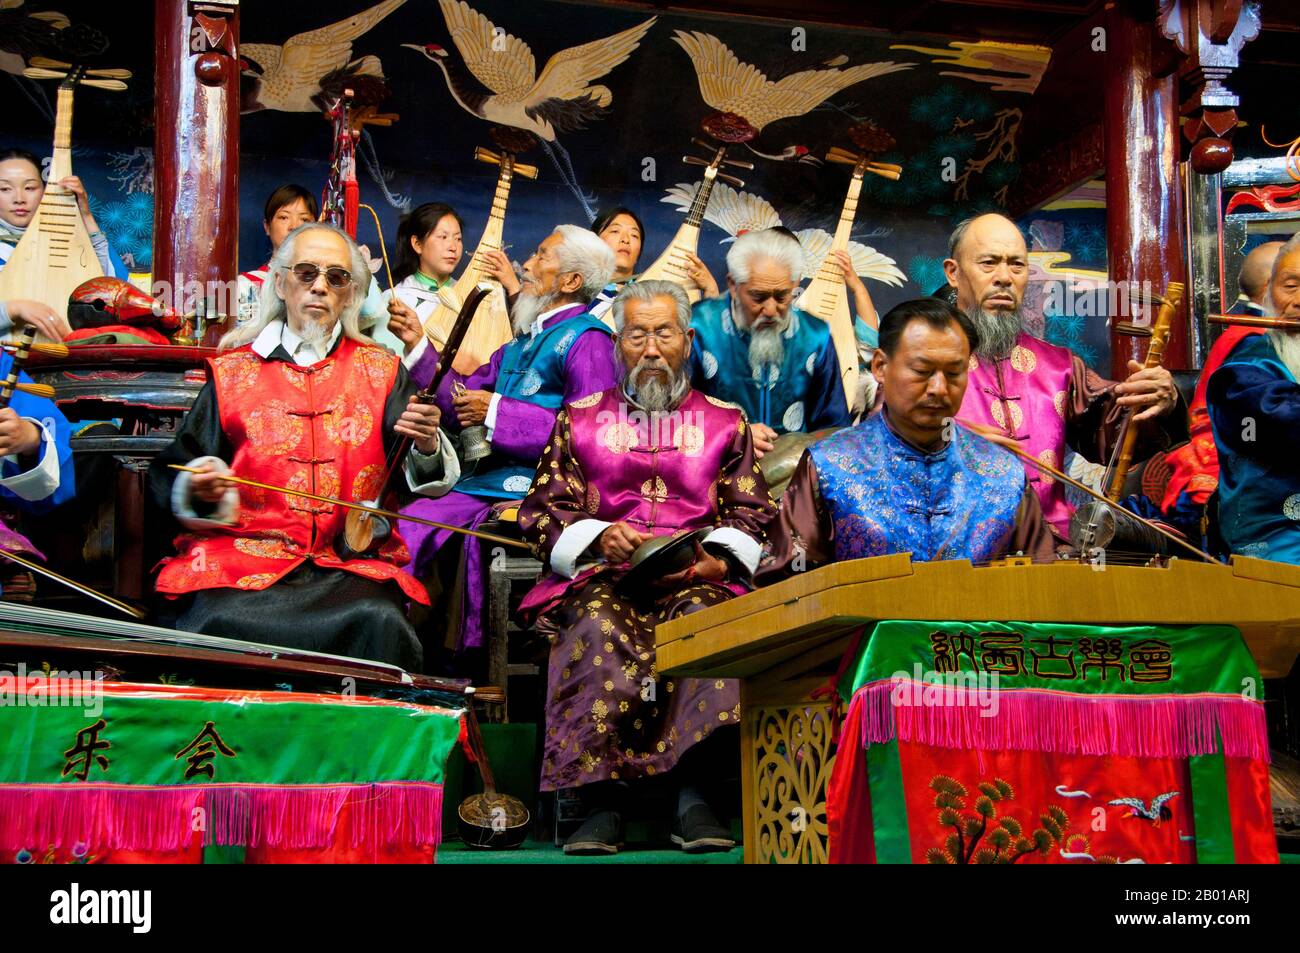 China: Das Naxi (Nakhi) Folk Orchestra, Naxi Orchestra Hall, Lijiang Old Town, Provinz Yunnan. Naxi-Musik ist 500 Jahre alt und hat mit ihrer Mischung aus literarischen Texten, poetischen Themen und musikalischen Stilen der Tang-, Song- und Yuan-Dynastien sowie einigen tibetischen Einflüssen einen eigenen, einzigartigen Stil und Züge entwickelt. Es gibt drei Hauptstile: Baisha, Dongjing und Huangjing, alle mit traditionellen chinesischen Instrumenten. Die Naxi oder Nakhi sind eine ethnische Gruppe, die am Fuße des Himalaya im Nordwesten der Provinz Yunnan lebt. Stockfoto